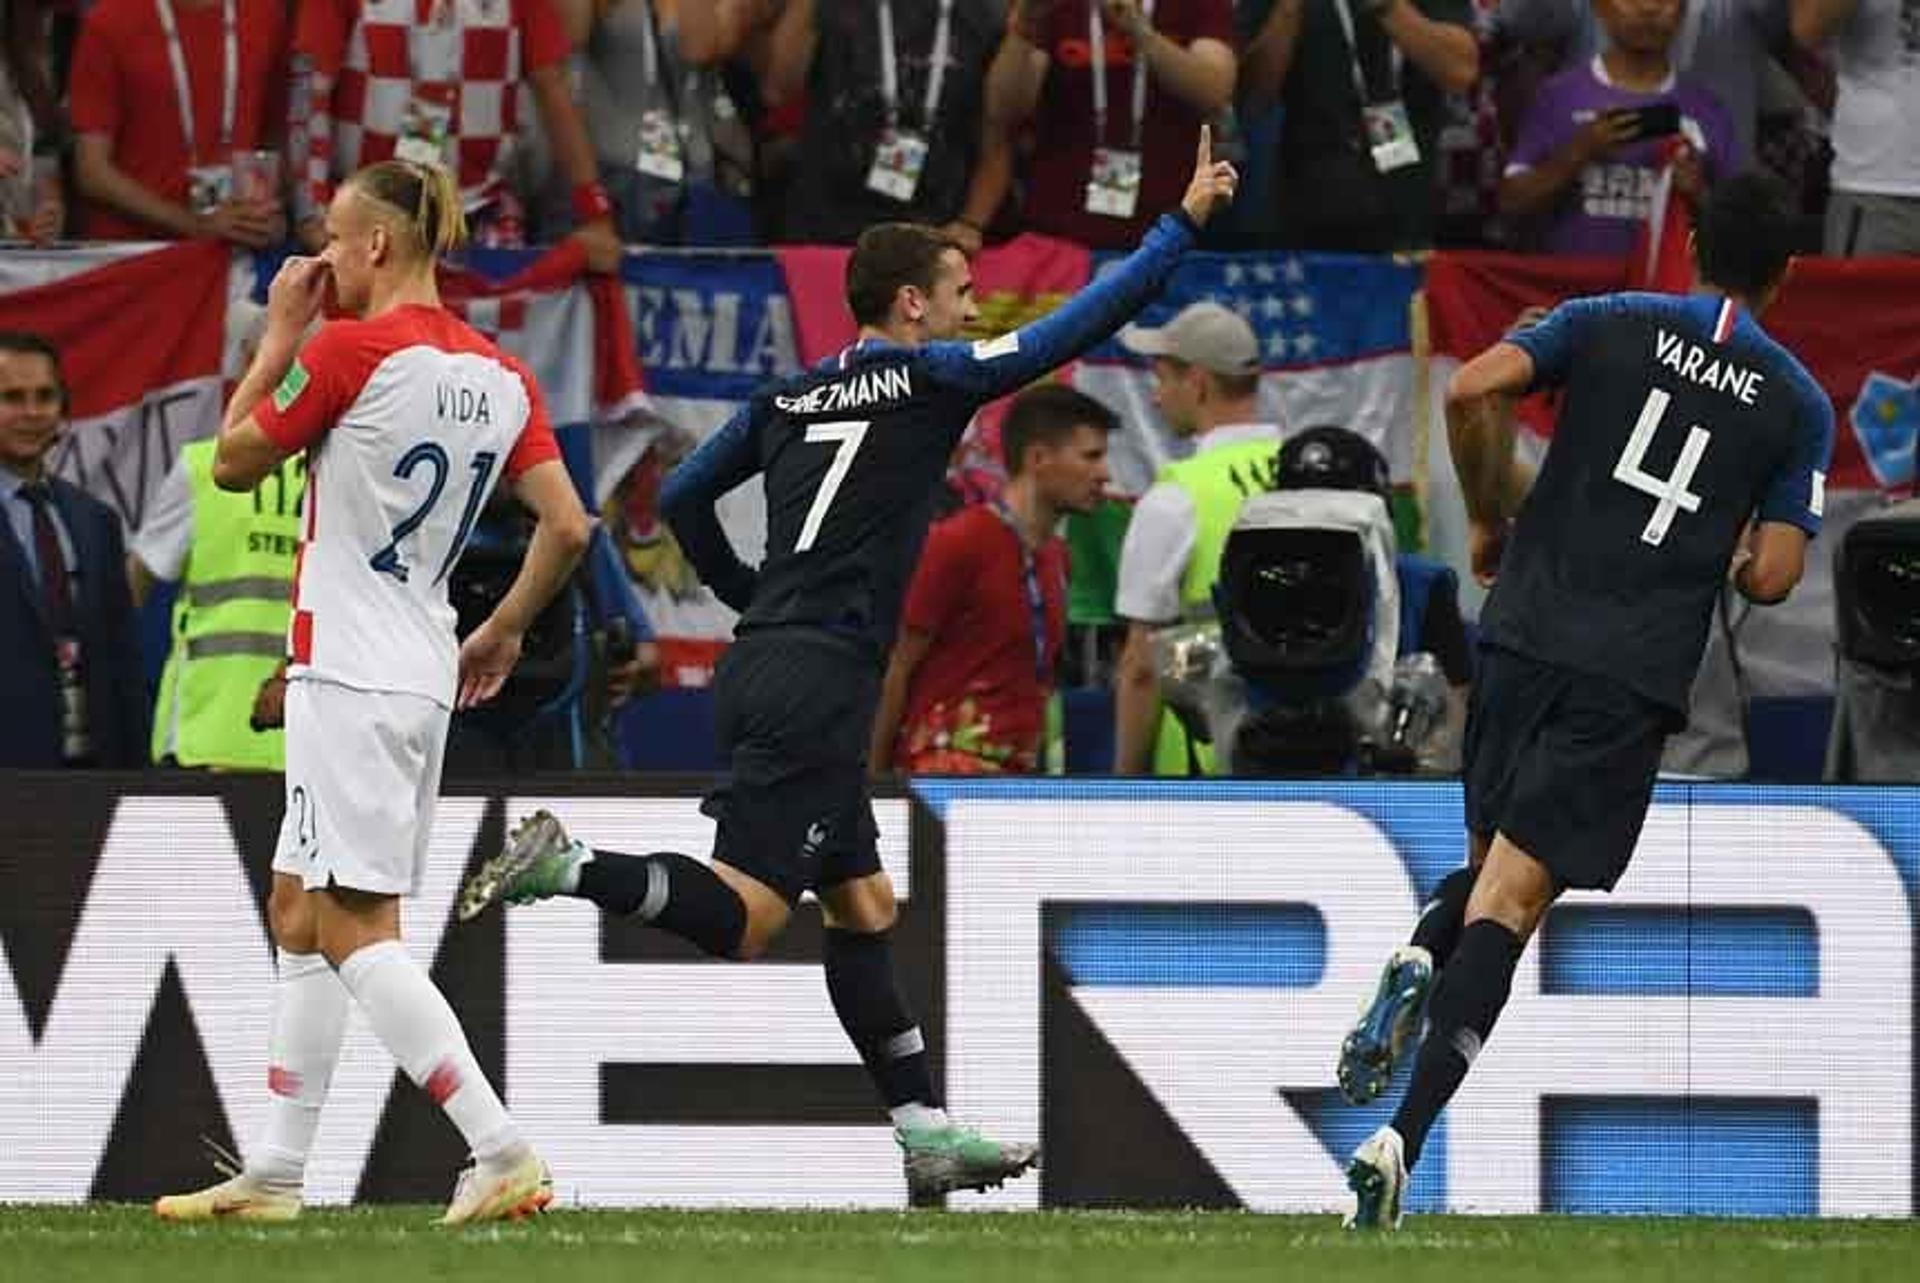 A França não jogou bonito, mas foi muito eficiente e fez 4 a 2 na Croácia, levando o título da Copa do Mundo de 2018. Mandzukic, contra, Griezmann, Pogba e Mbappé marcaram os gols franceses. Confira a seguir as notas dos jogadores (por Luiza Sá)